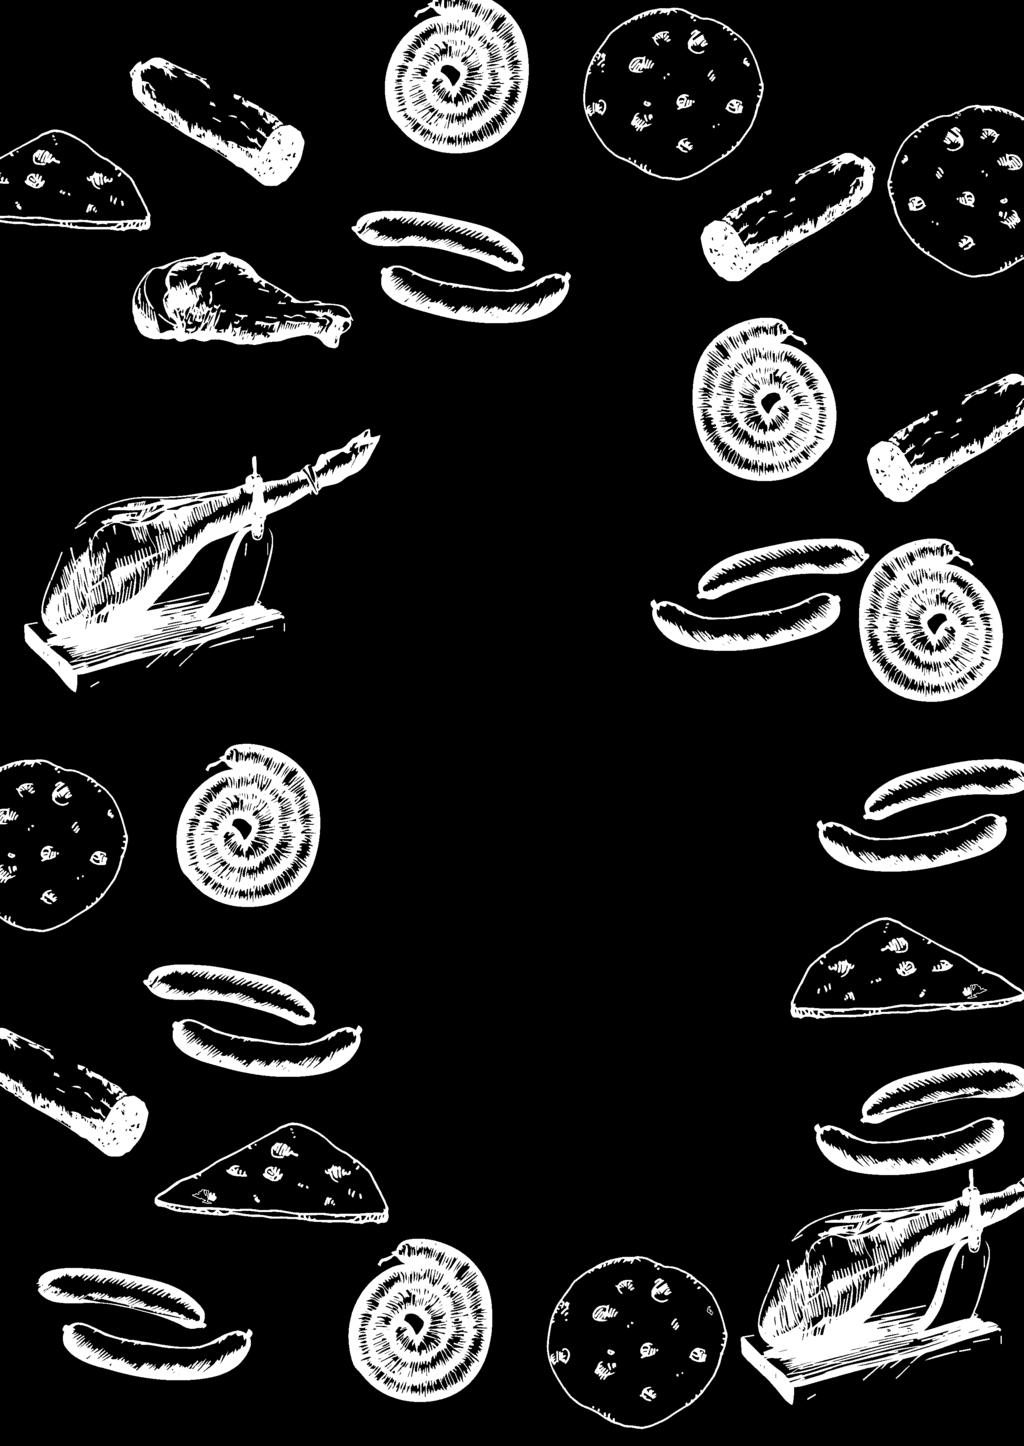 Rassegna di serate gastronomiche a tema quinta edizione A CENA IN BOTTEGA presso il ristorante Golinelli 1975 - dalle ore 20:00 veri sapori di casa AL CESTINO Tigelle